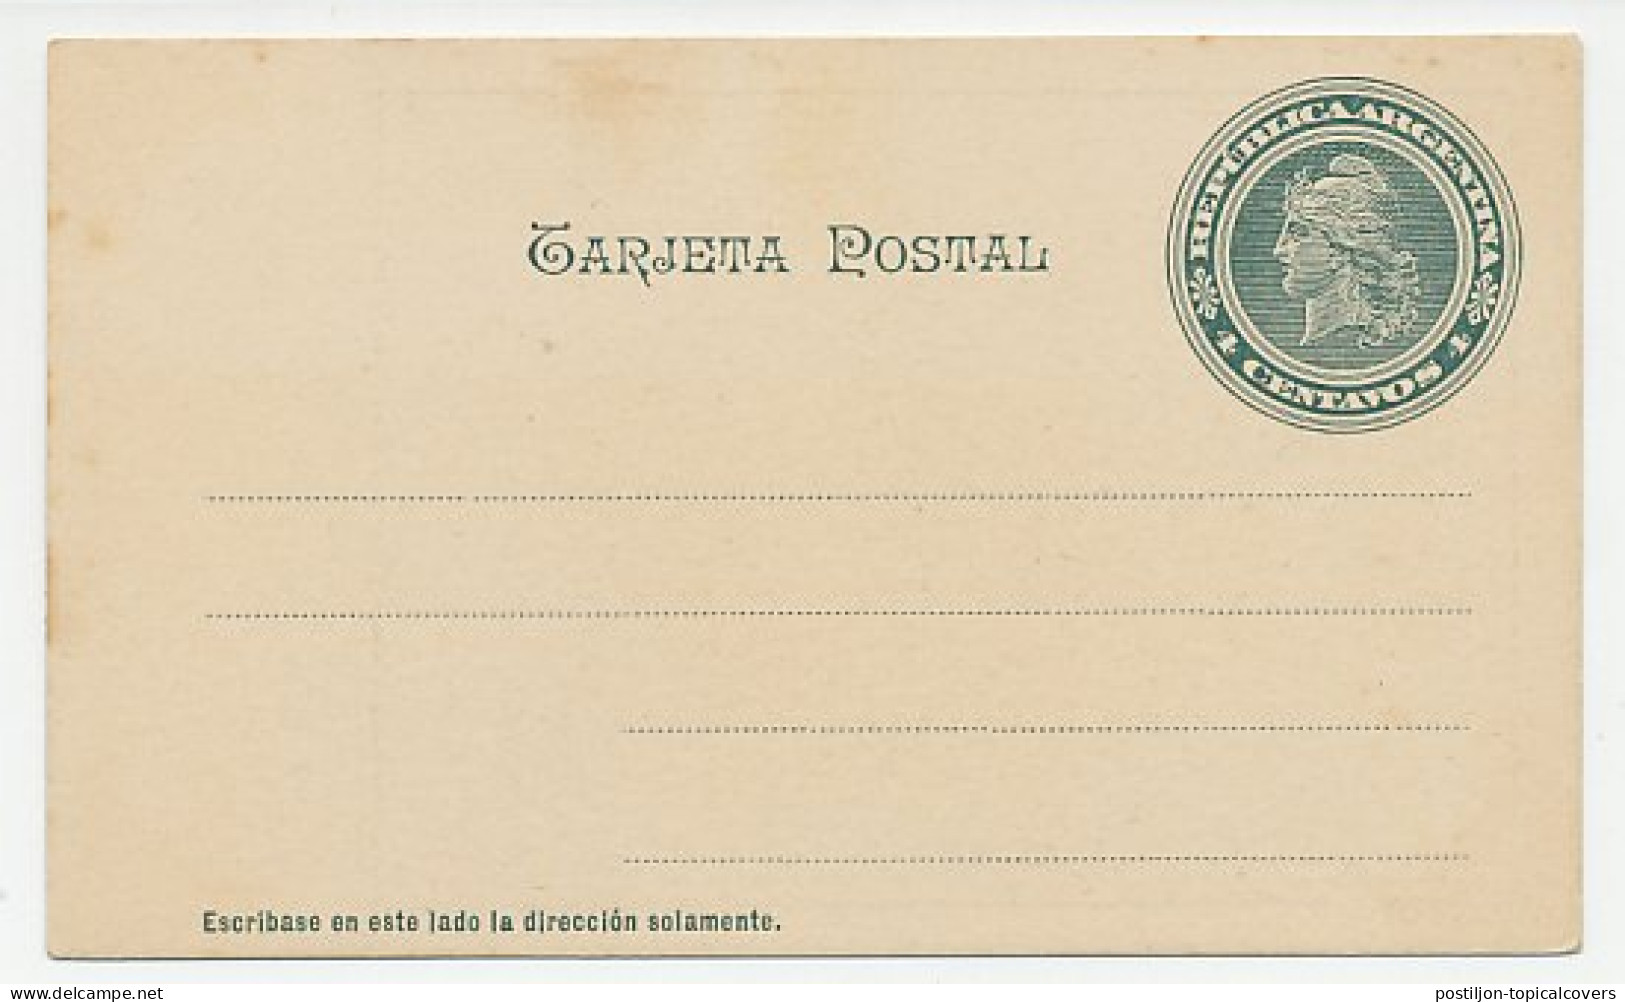 Postal Stationery Argentina Entre Rios Province - Aardrijkskunde